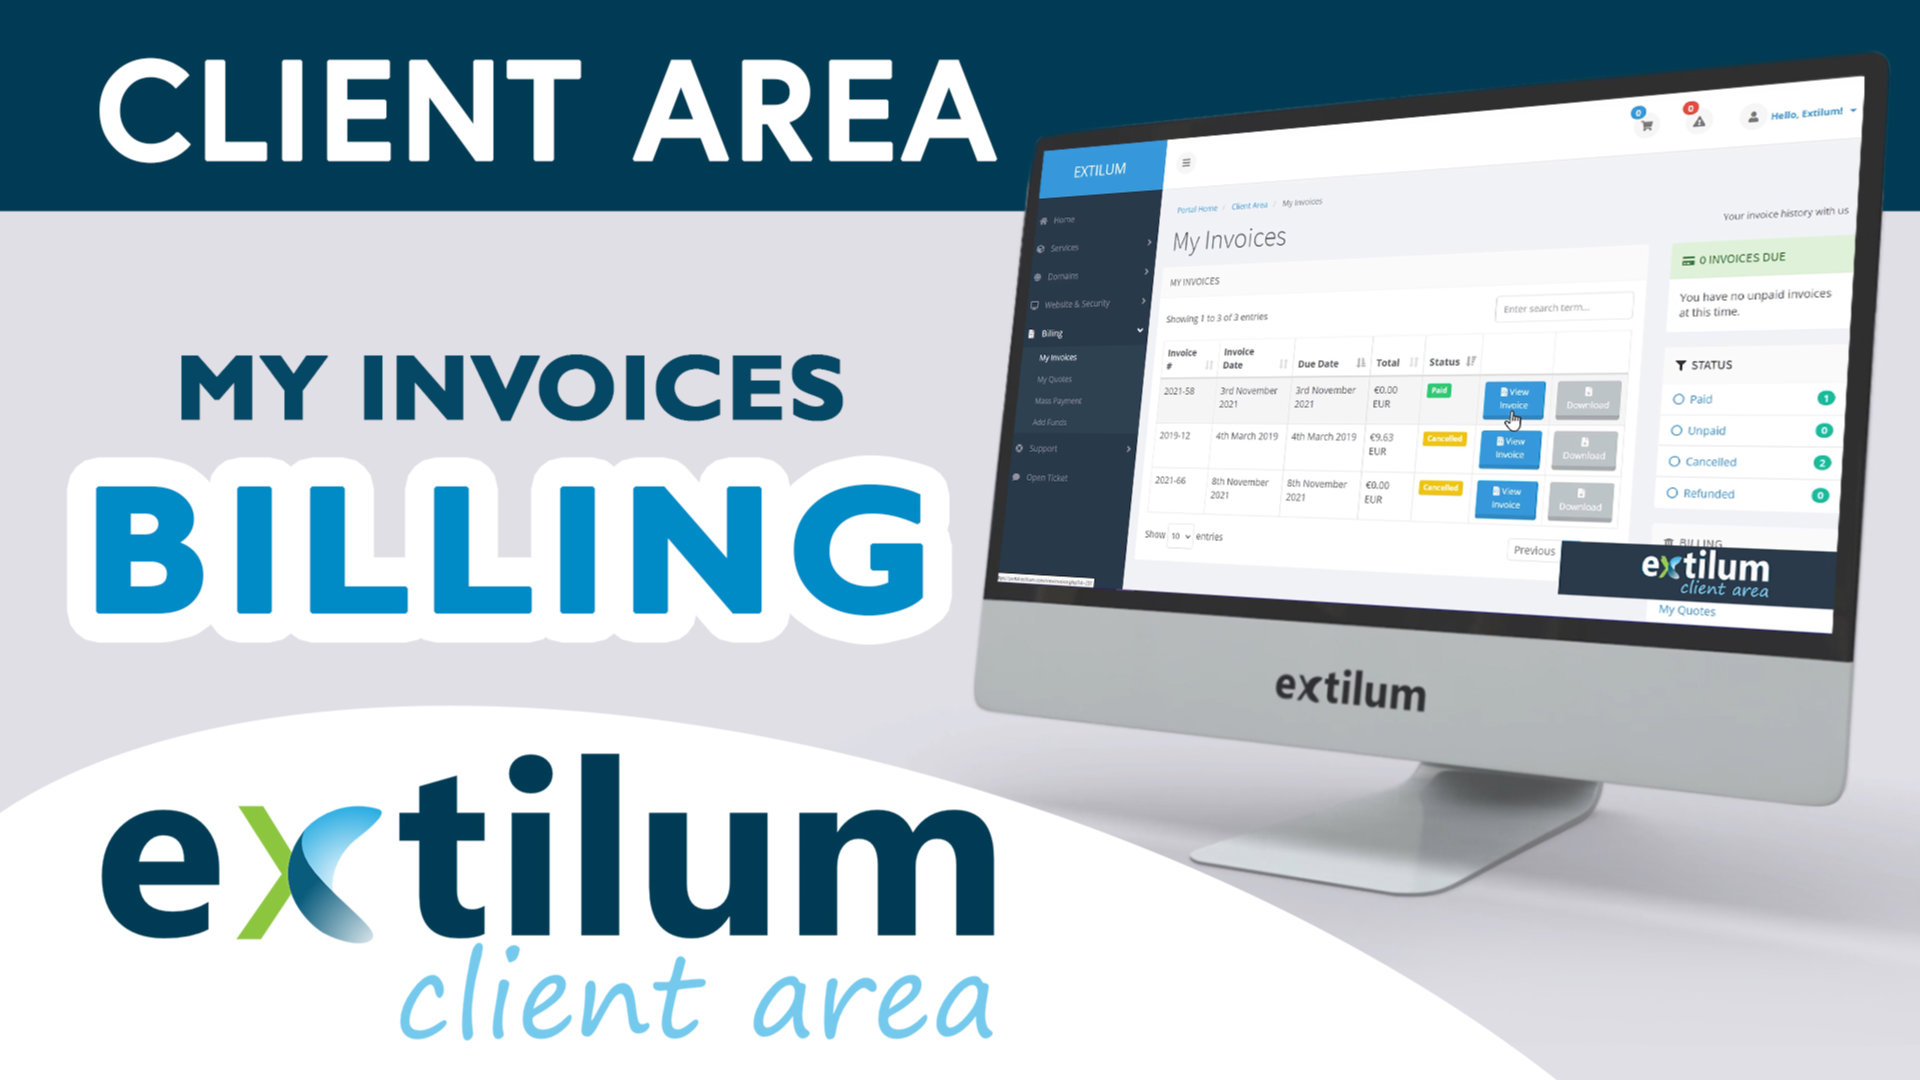 Extilum Client Area - Billing - My Invoices